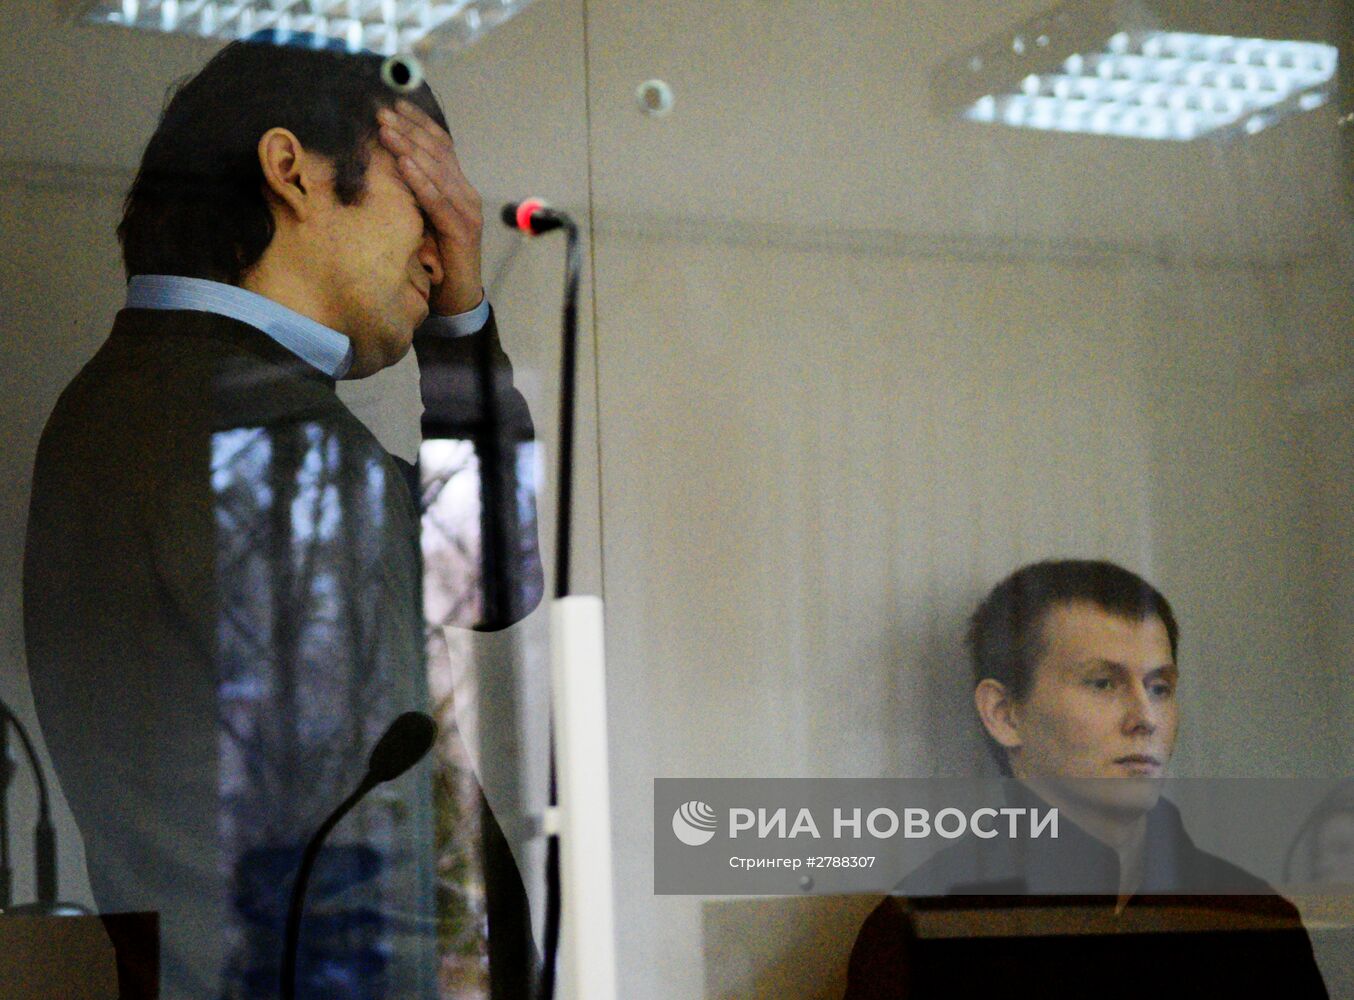 Заседание суда по делу А. Александрова и Е. Ерофеева в Киеве